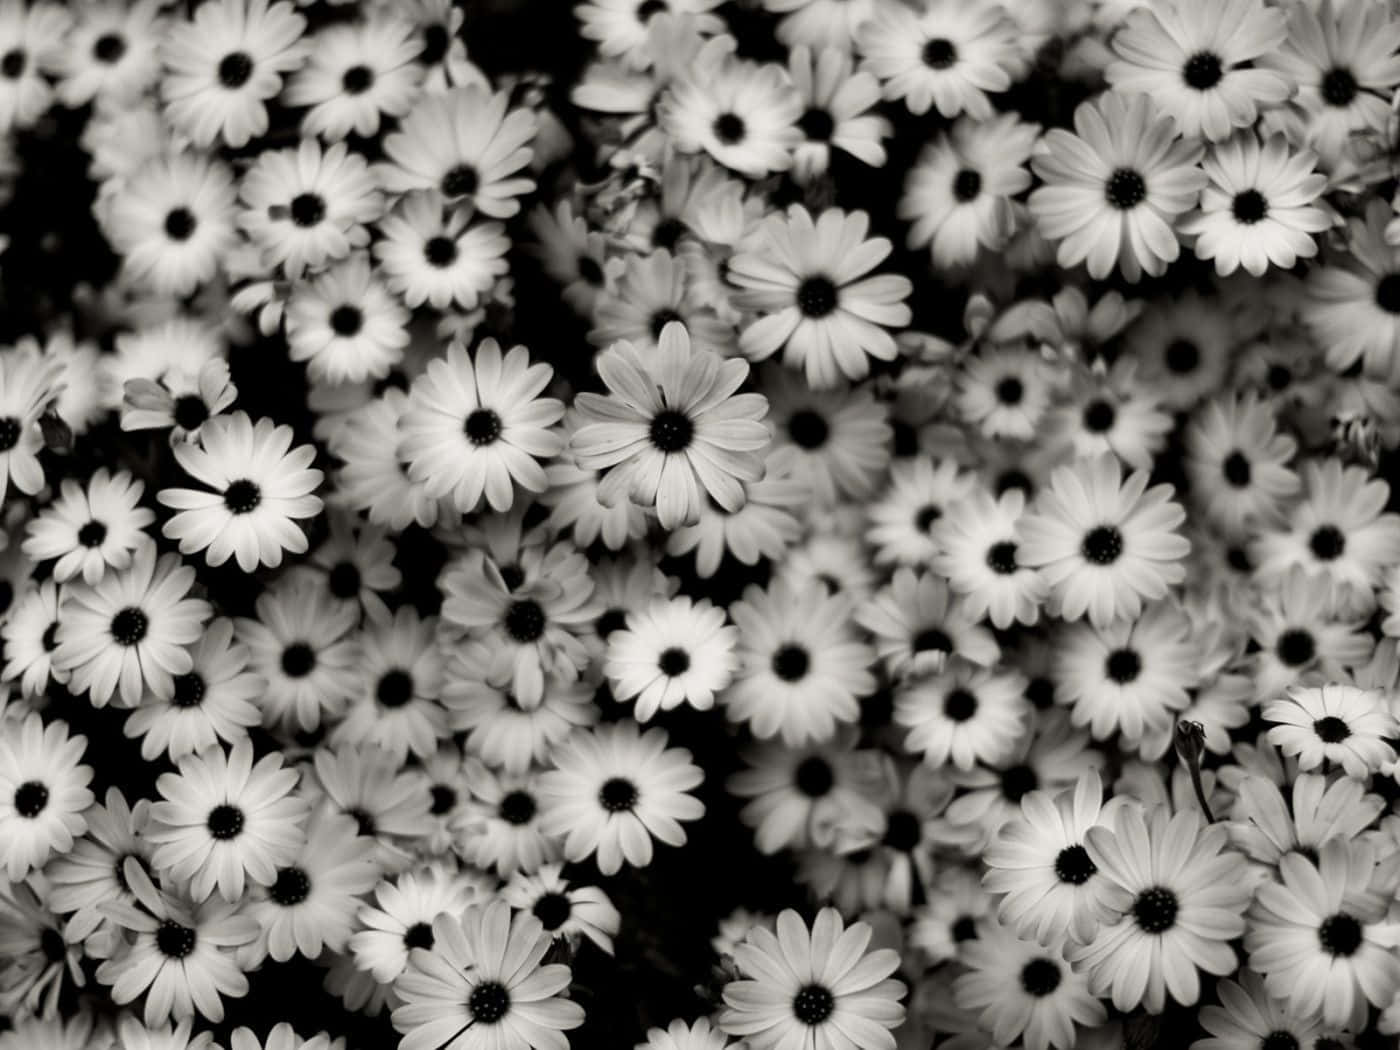 Unincantevole Fiore In Bianco E Nero